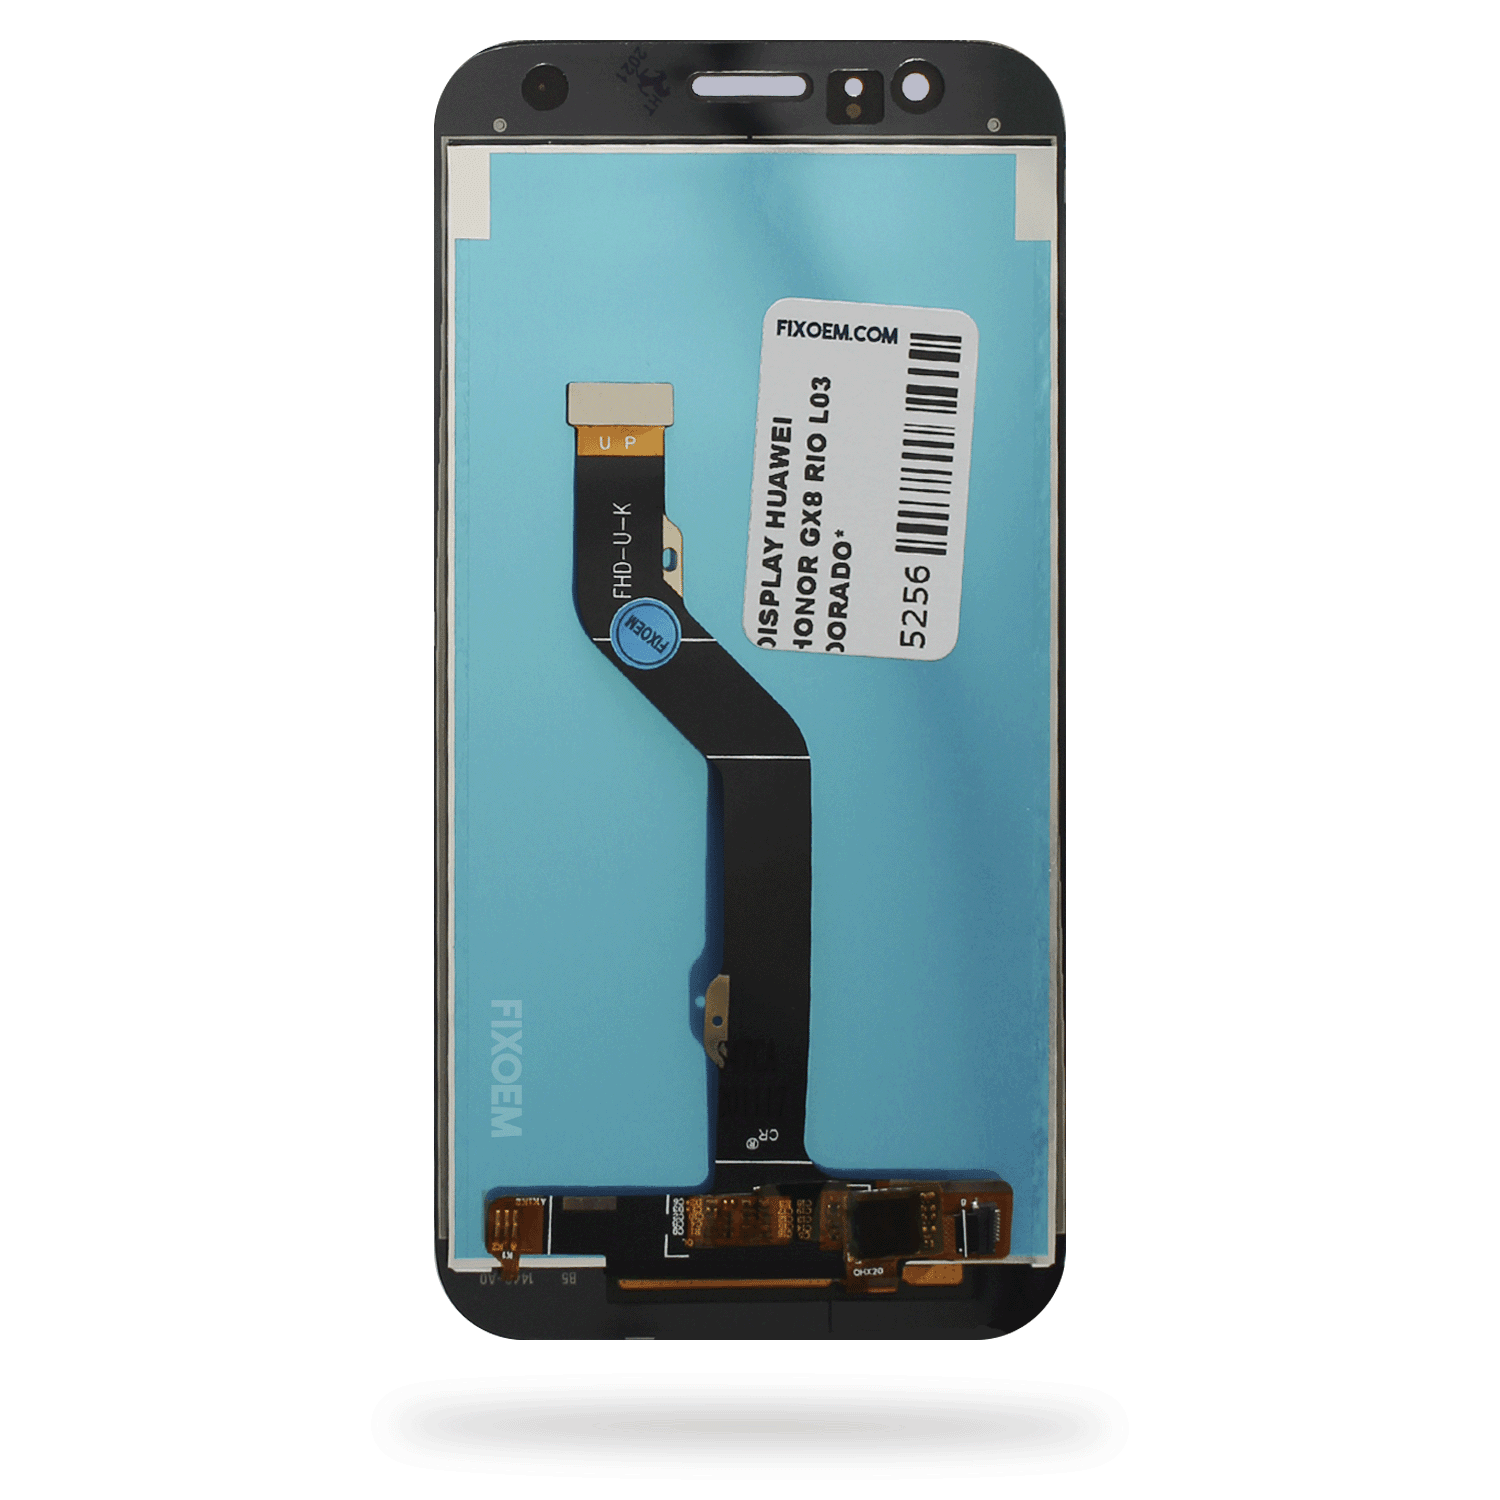 Display Huawei Honor Gx8 Rio-L03 IPS a solo $ 225.00 Refaccion y puestos celulares, refurbish y microelectronica.- FixOEM